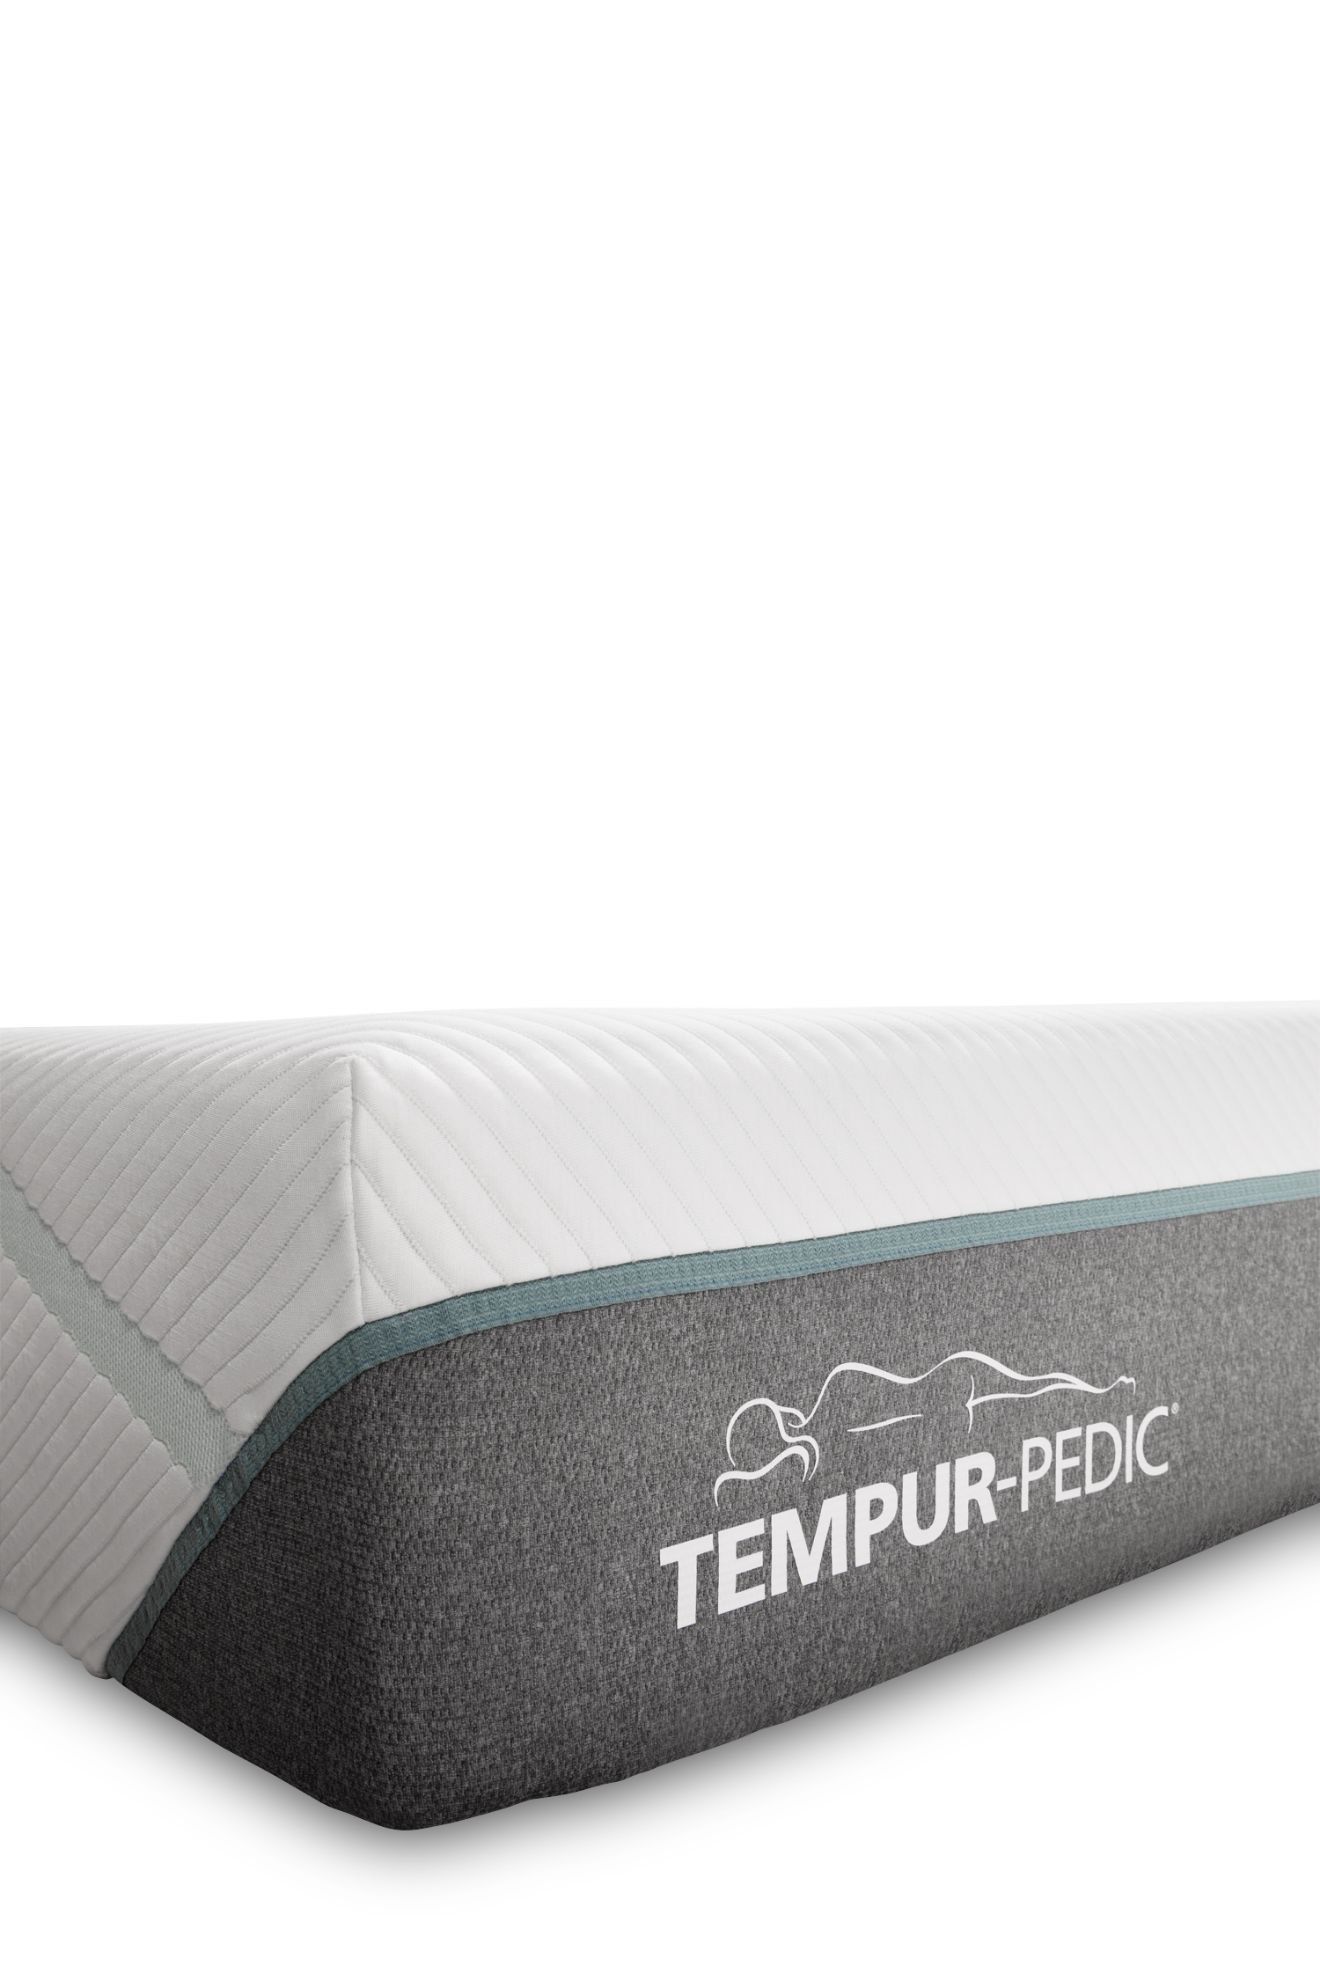 Picture of Tempur-Pedic Adapt Medium Hybrid Queen